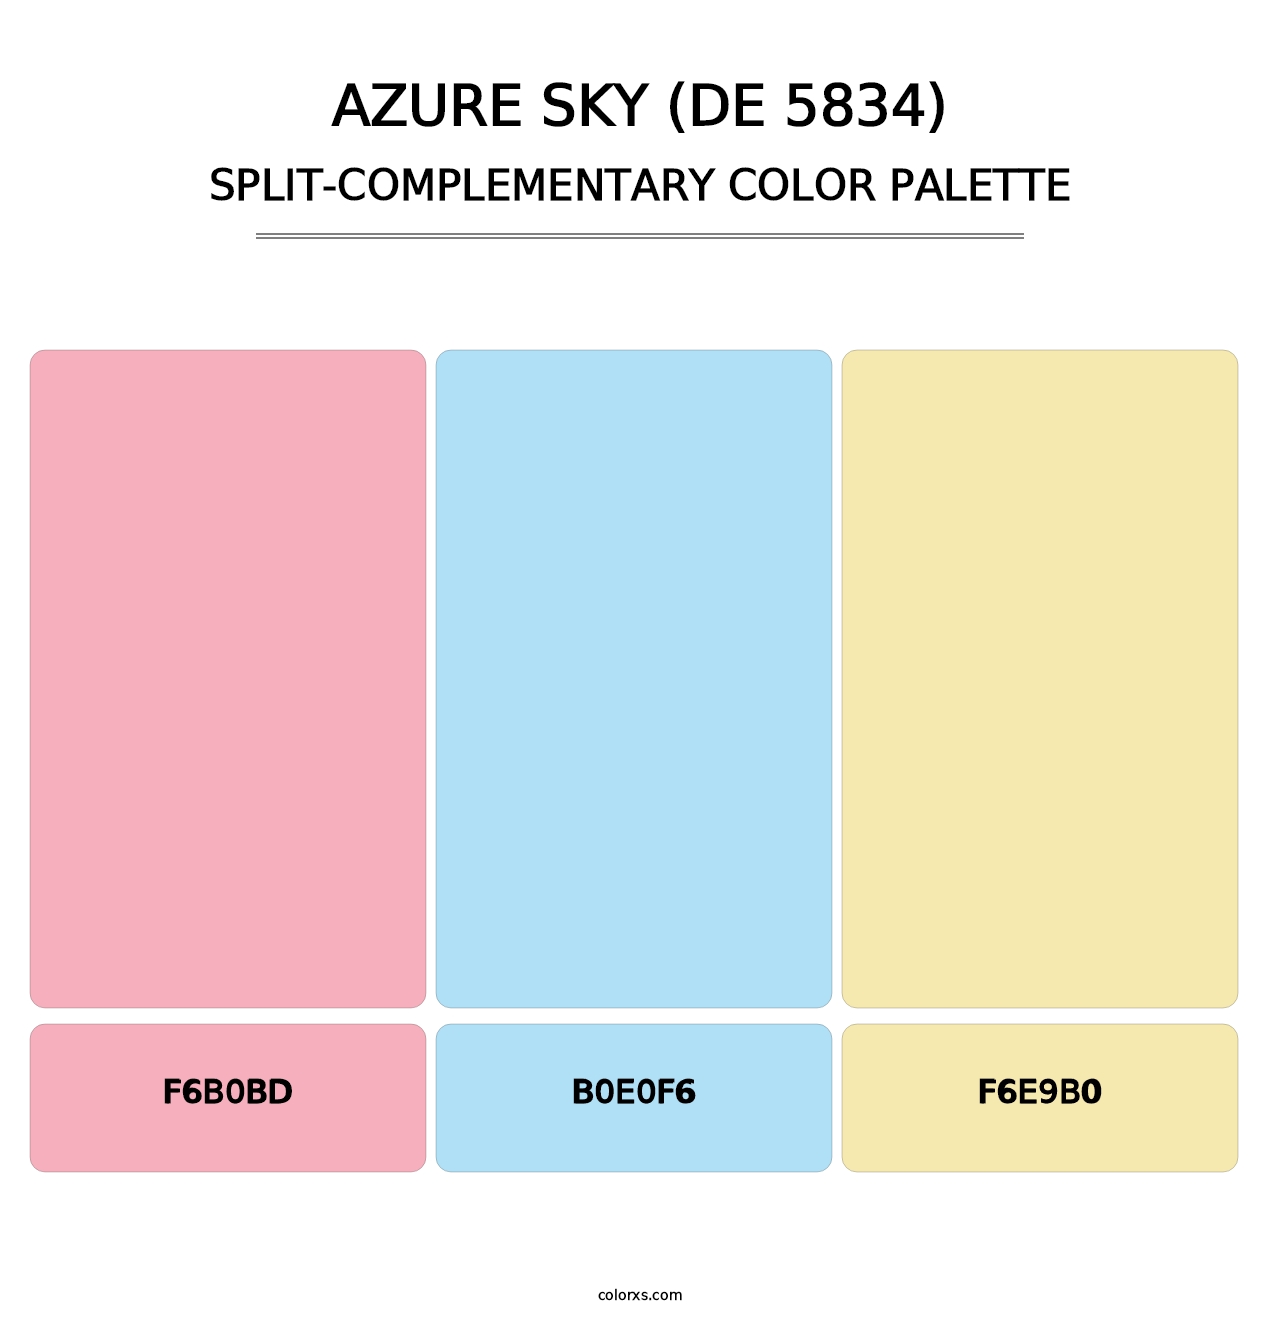 Azure Sky (DE 5834) - Split-Complementary Color Palette